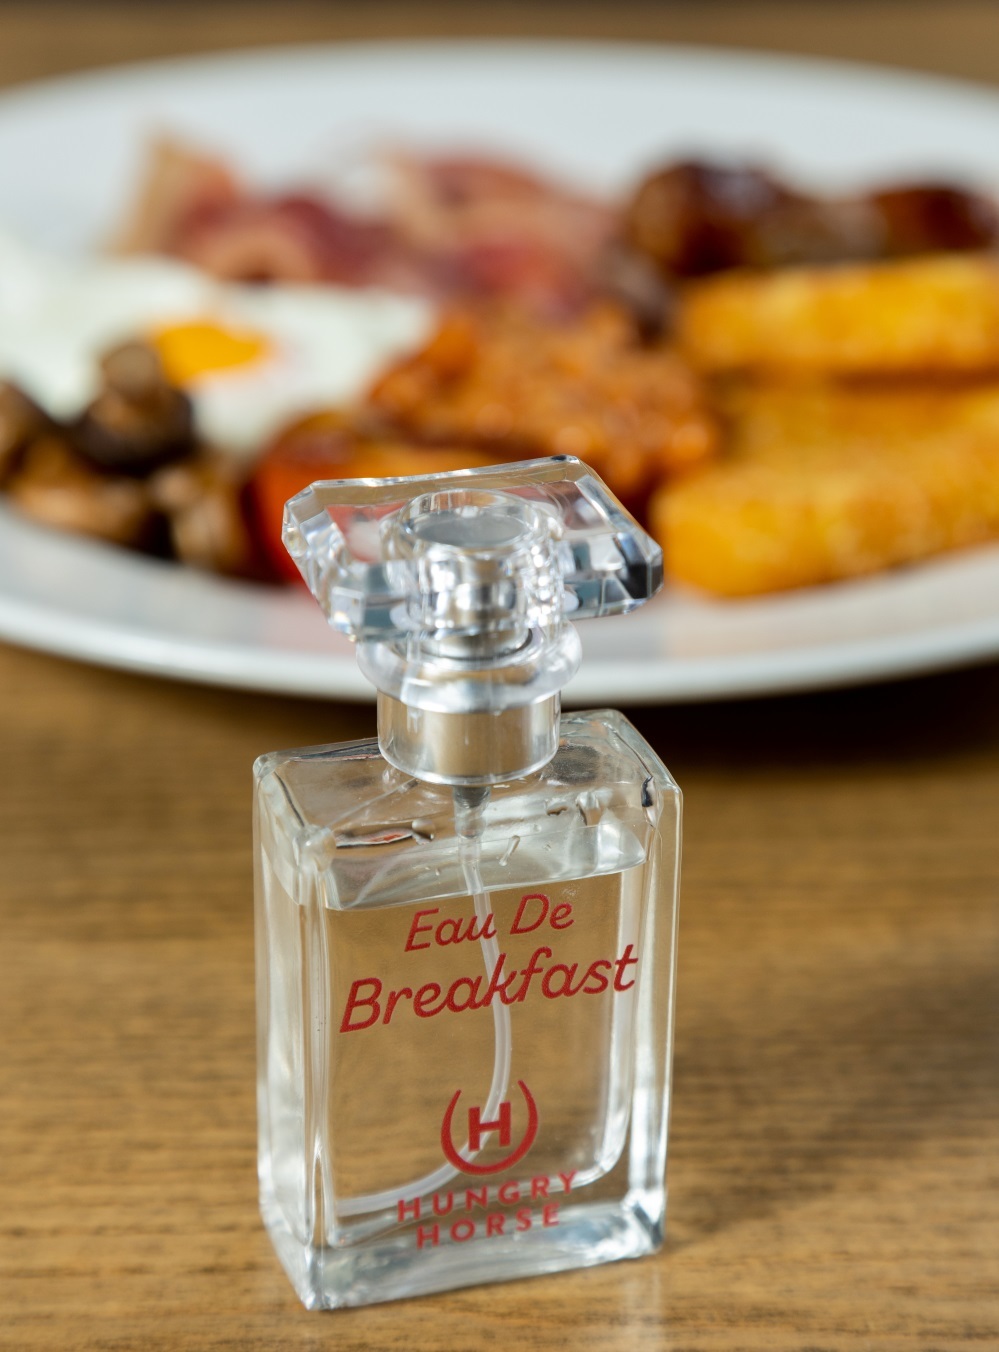 breakfast scent